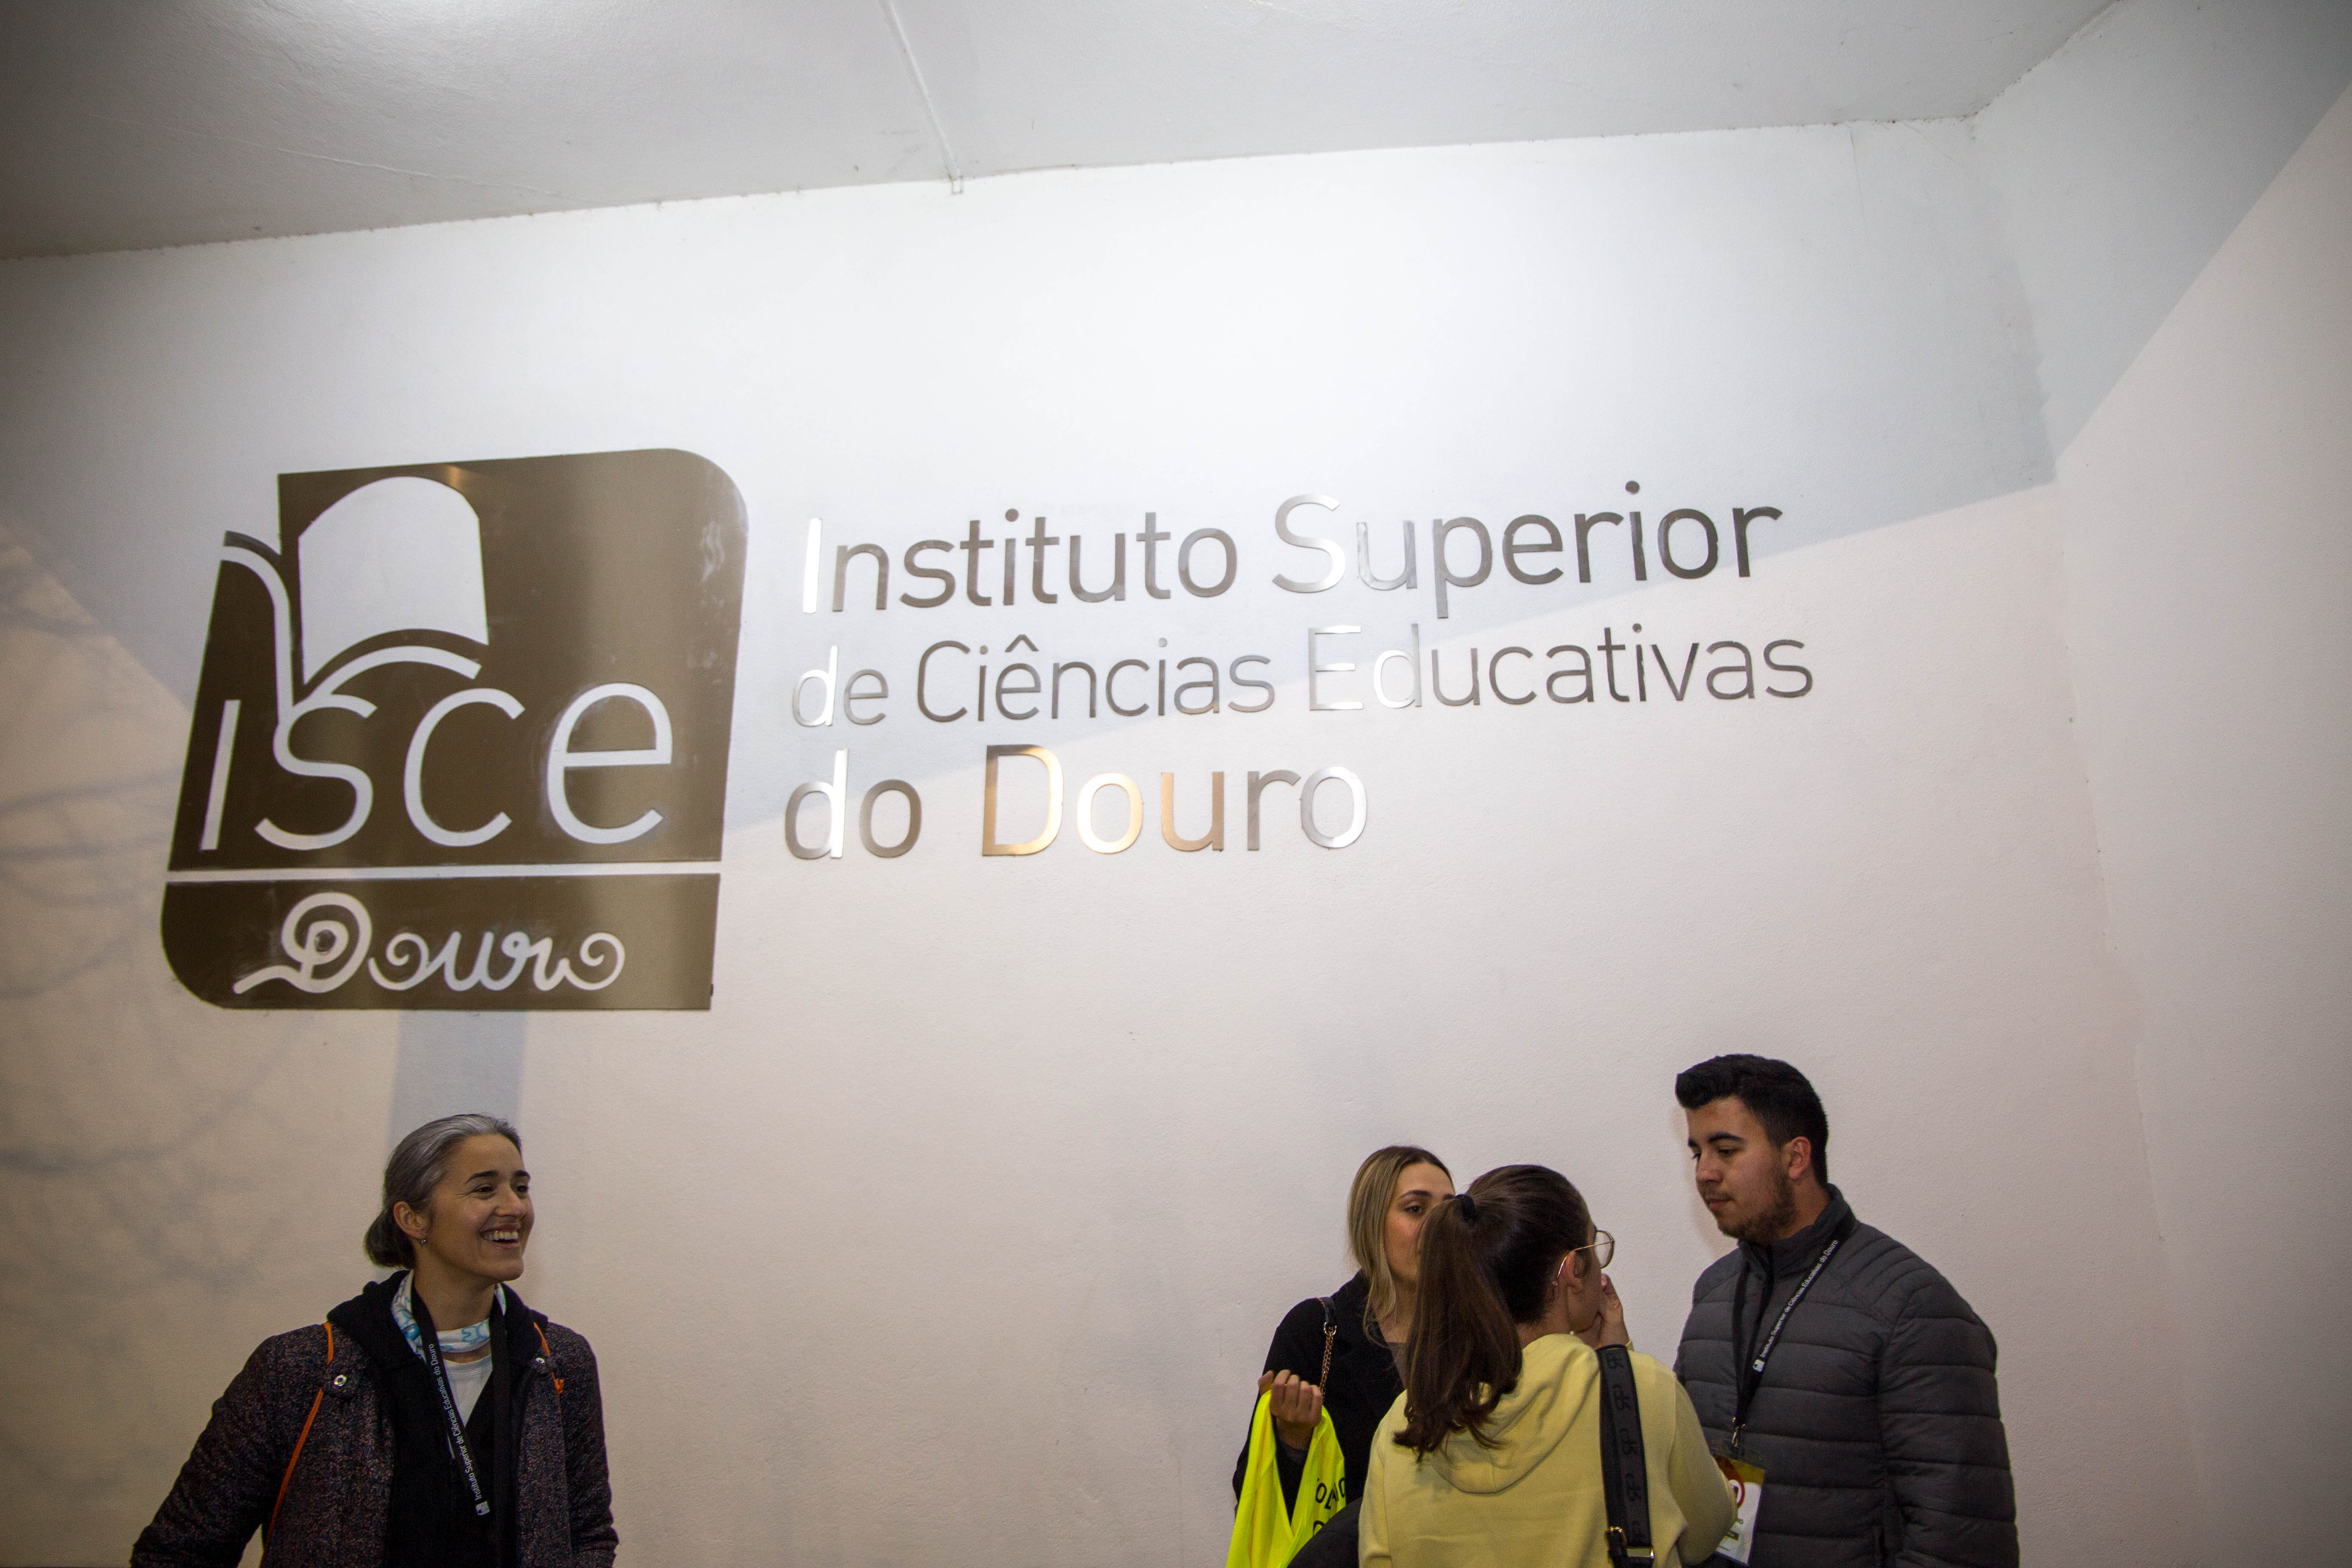 Voluntariado do ISCE Douro em movimento